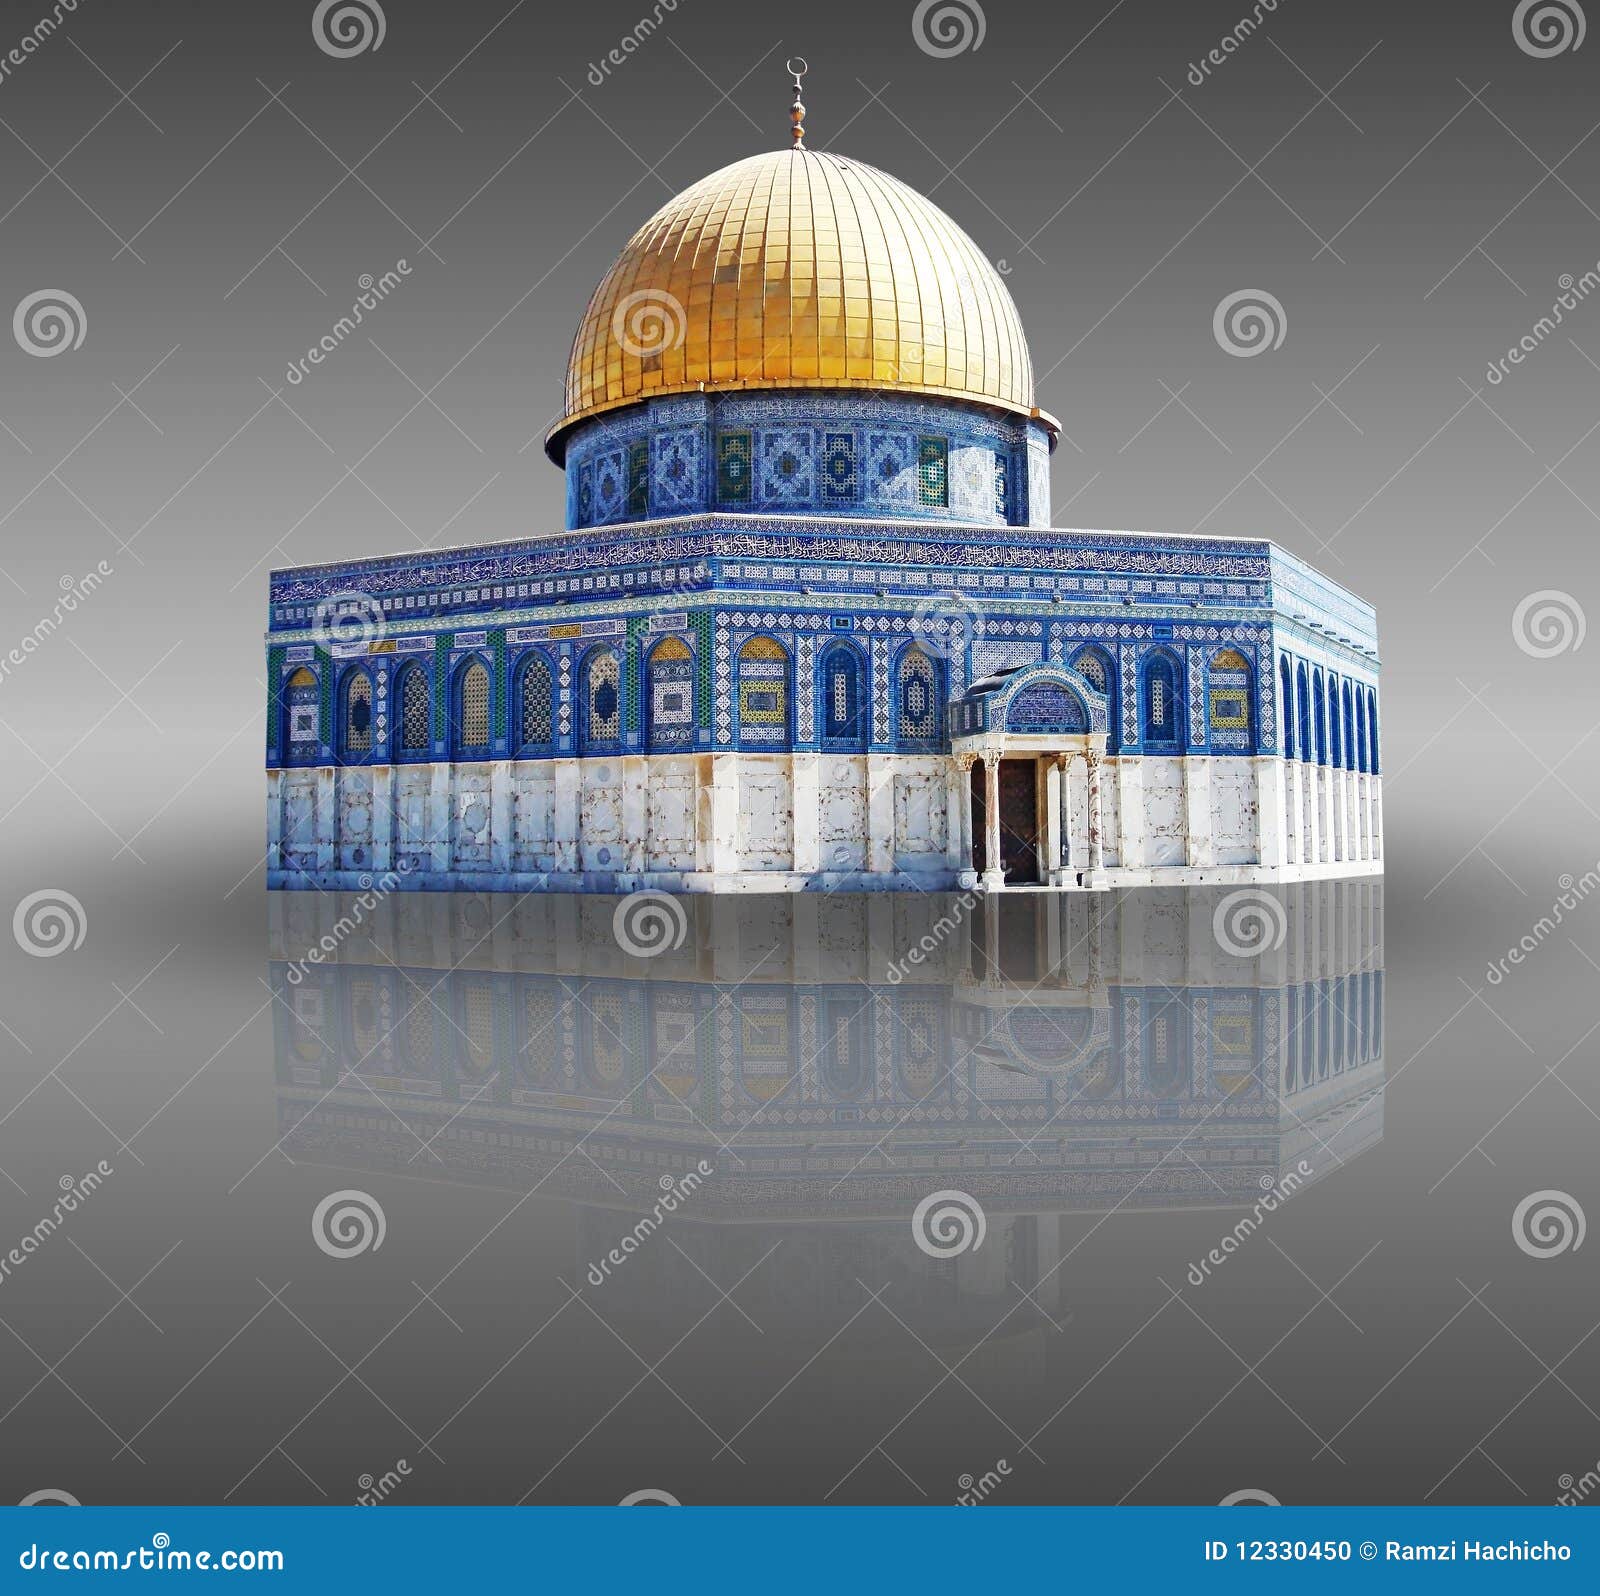 jerusalem palestine - the dome of the rock